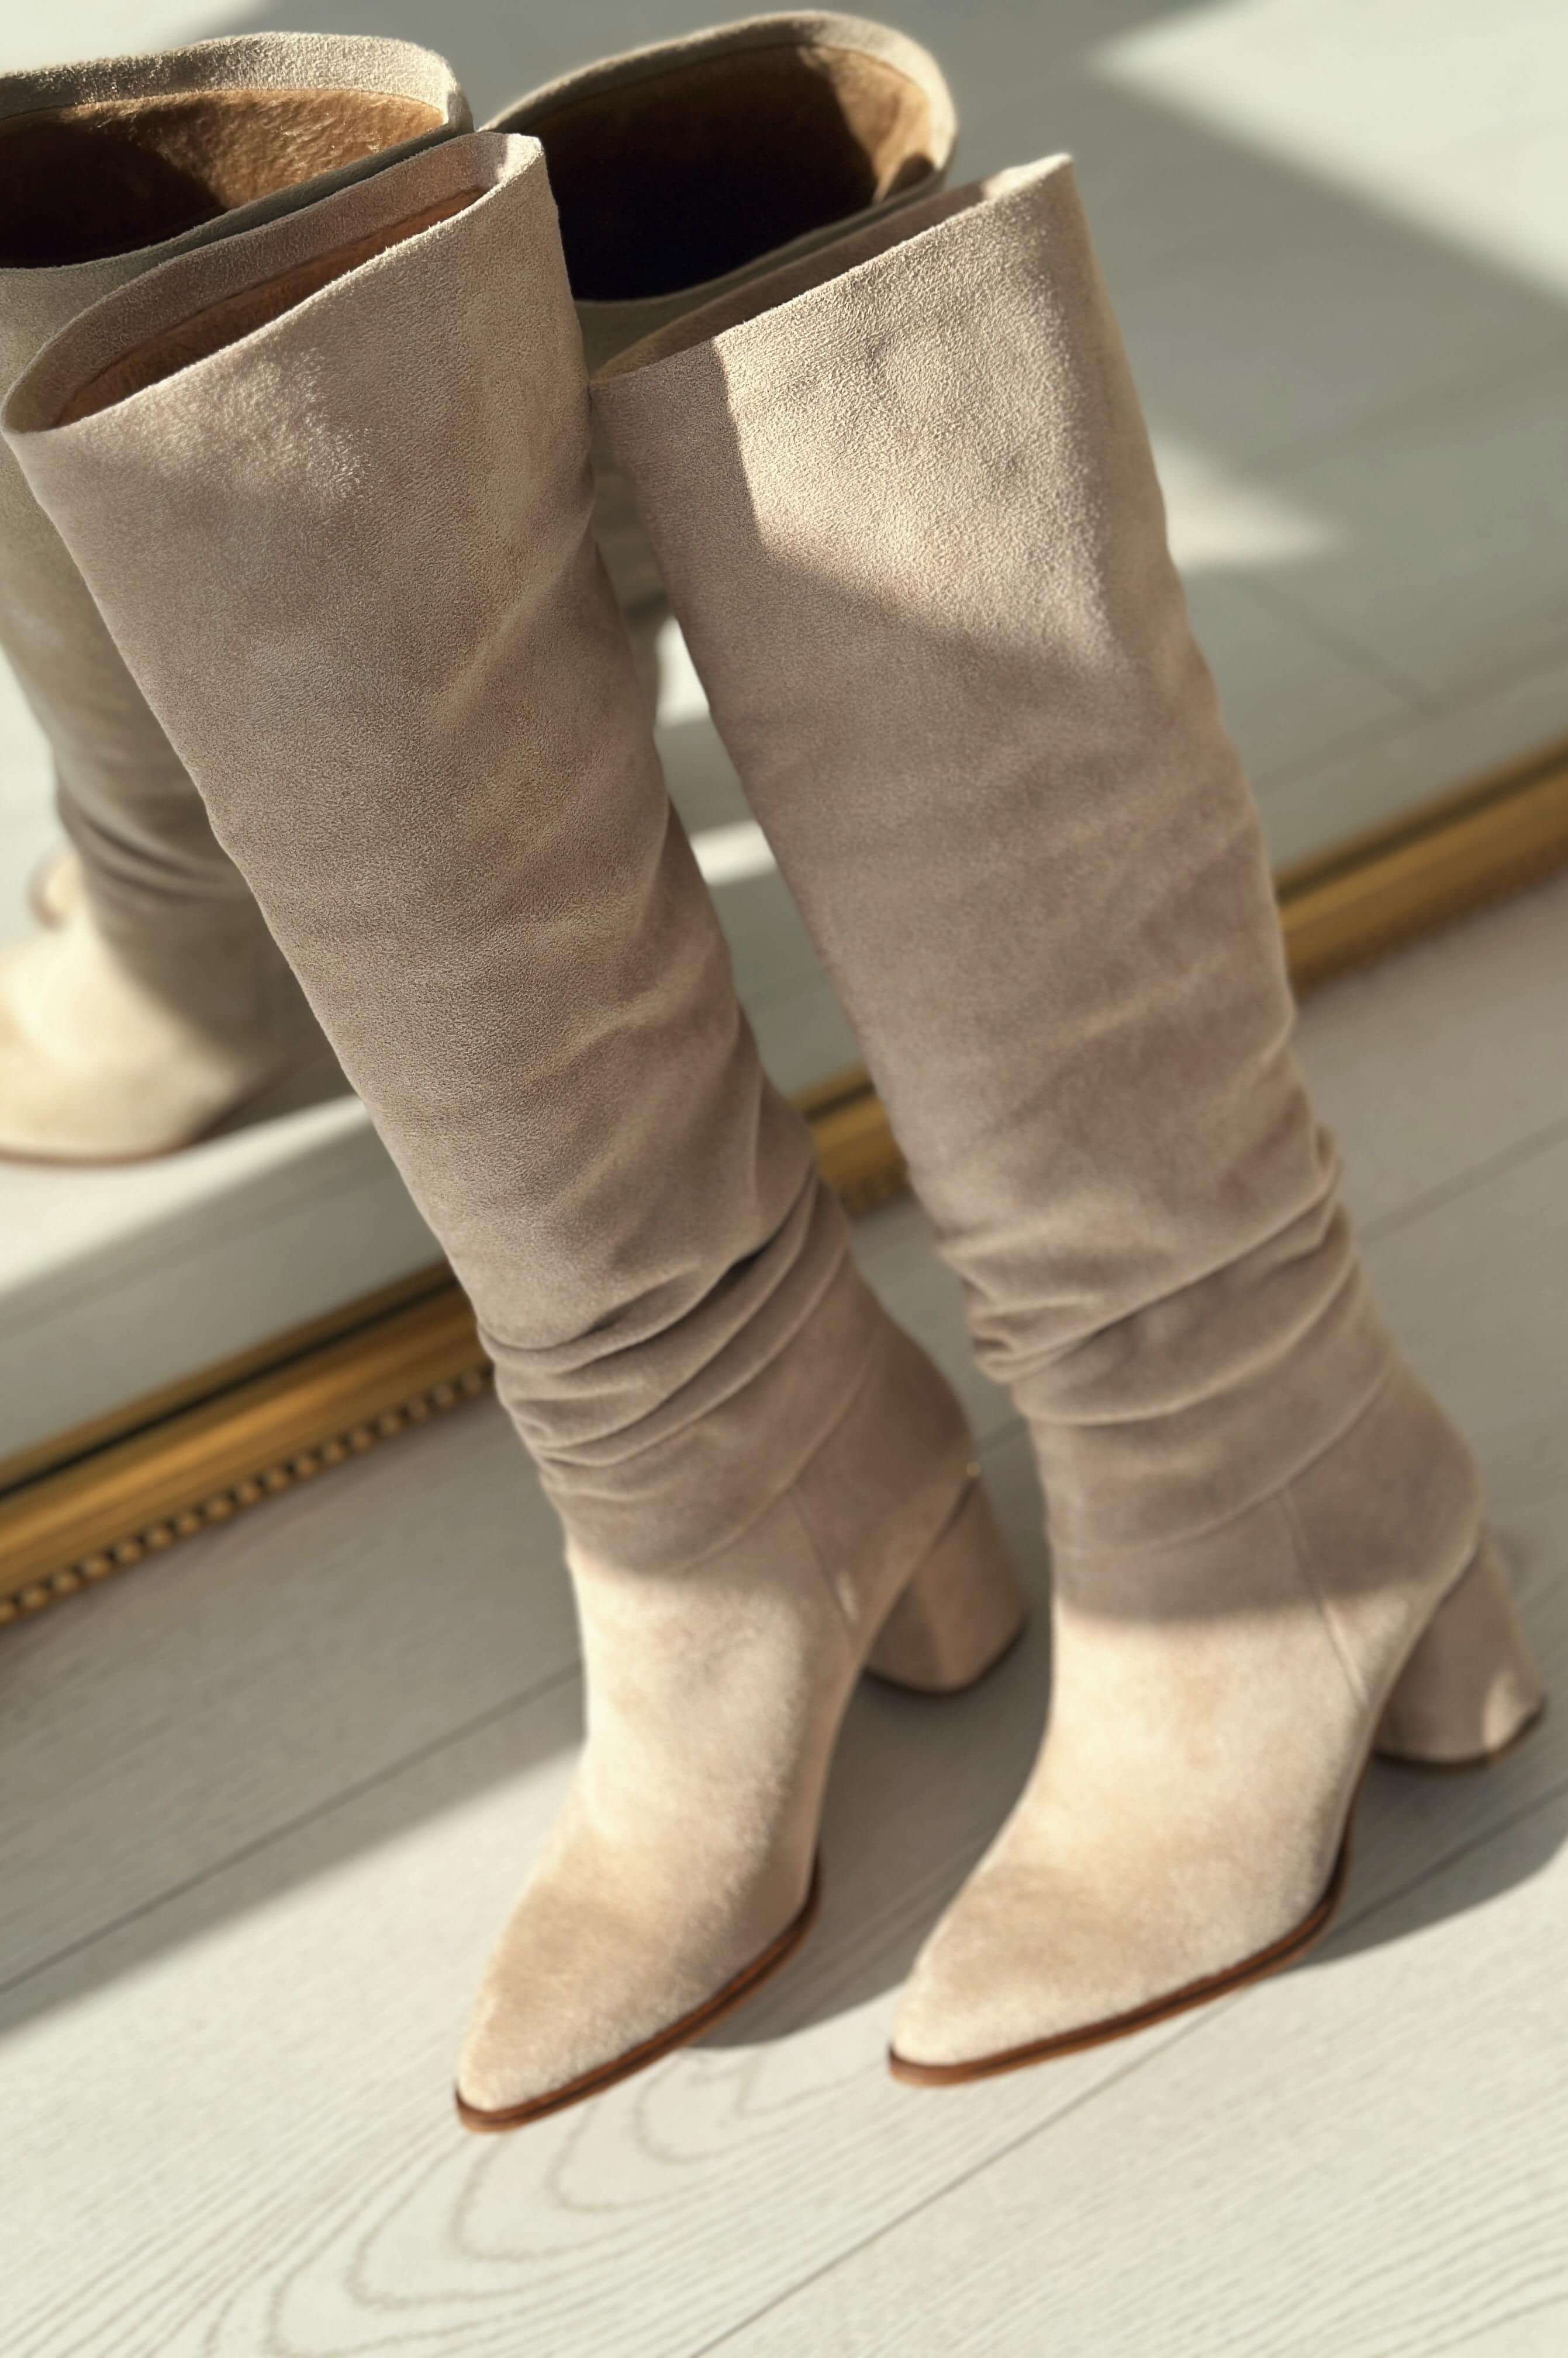 Votens suede bellows woman heels boot beige beige